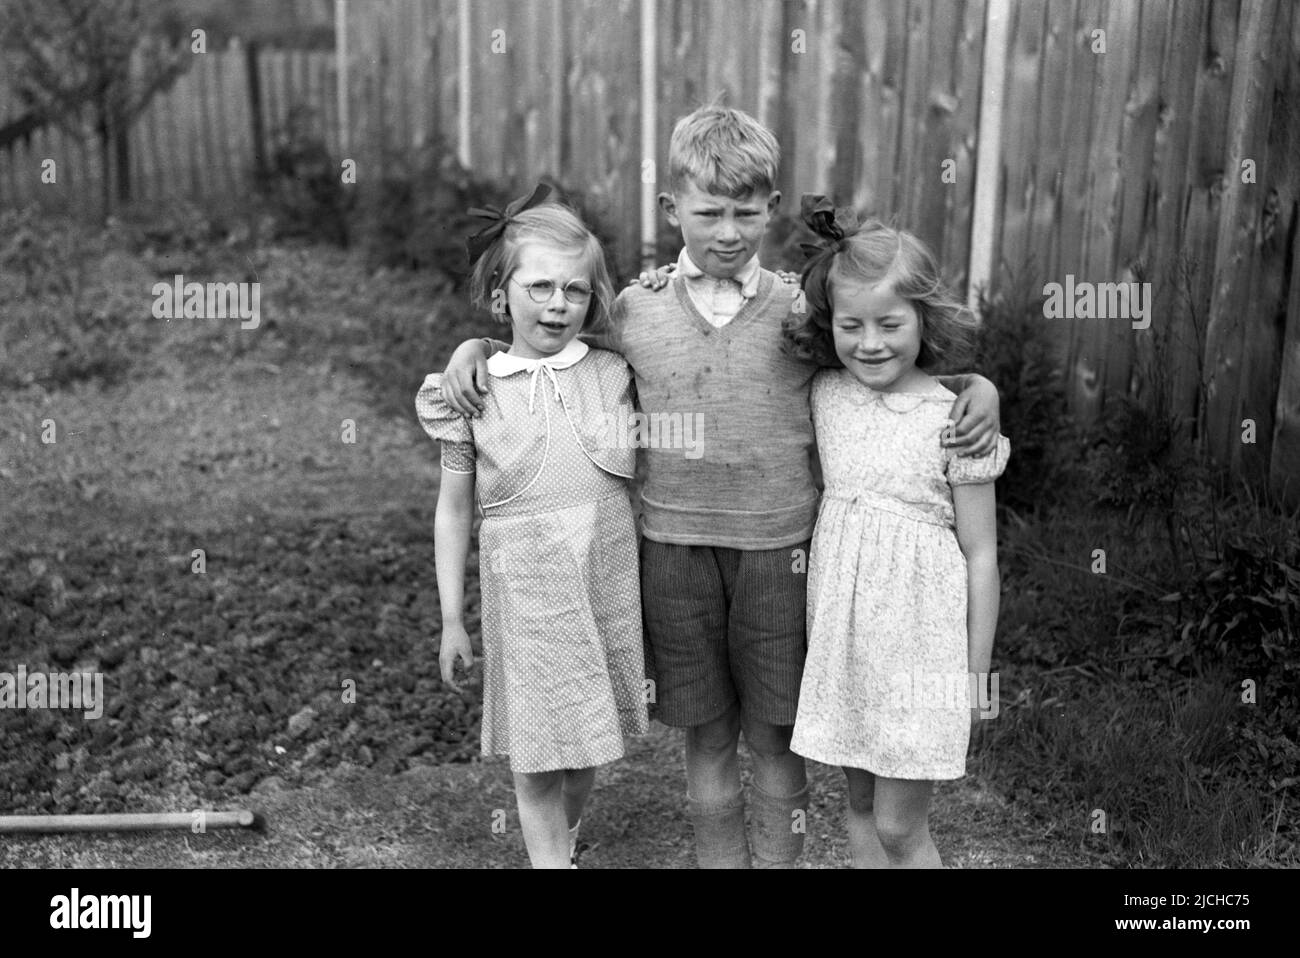 1950s, historisch, draußen im Hintergarten, ein kleiner Junge, der mit seinen Armen um seine beiden jüngeren Schwestern steht, eine lächelnd, mit geschlossenen Augen, ..Schau nicht hin! England, Großbritannien. Stockfoto